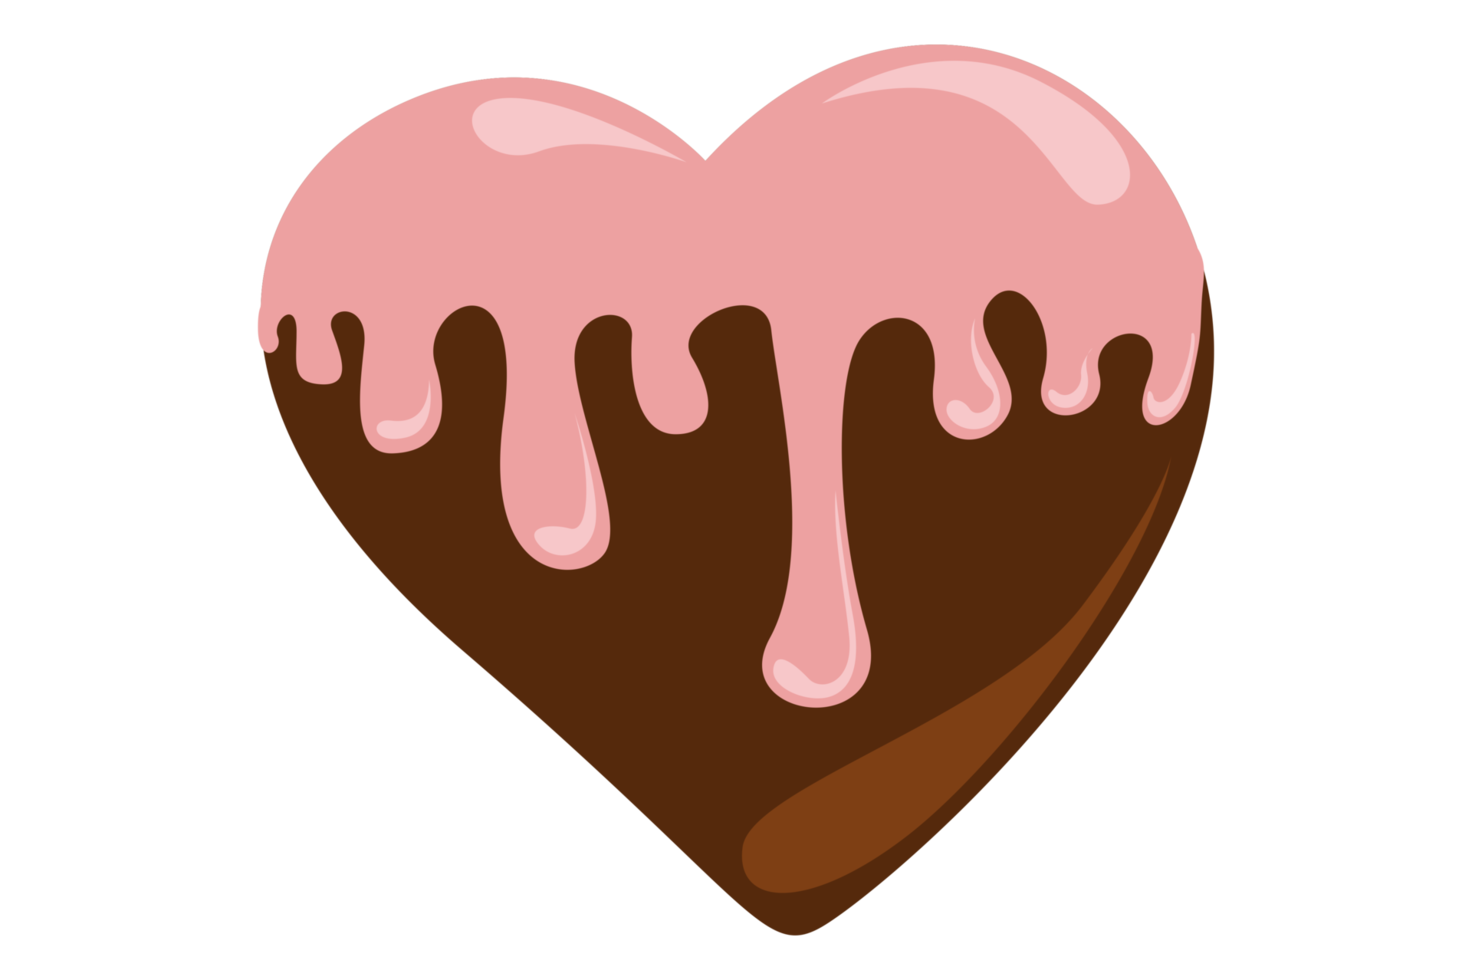 enamorado - amor chocolate con Derretido rosado chocolate png